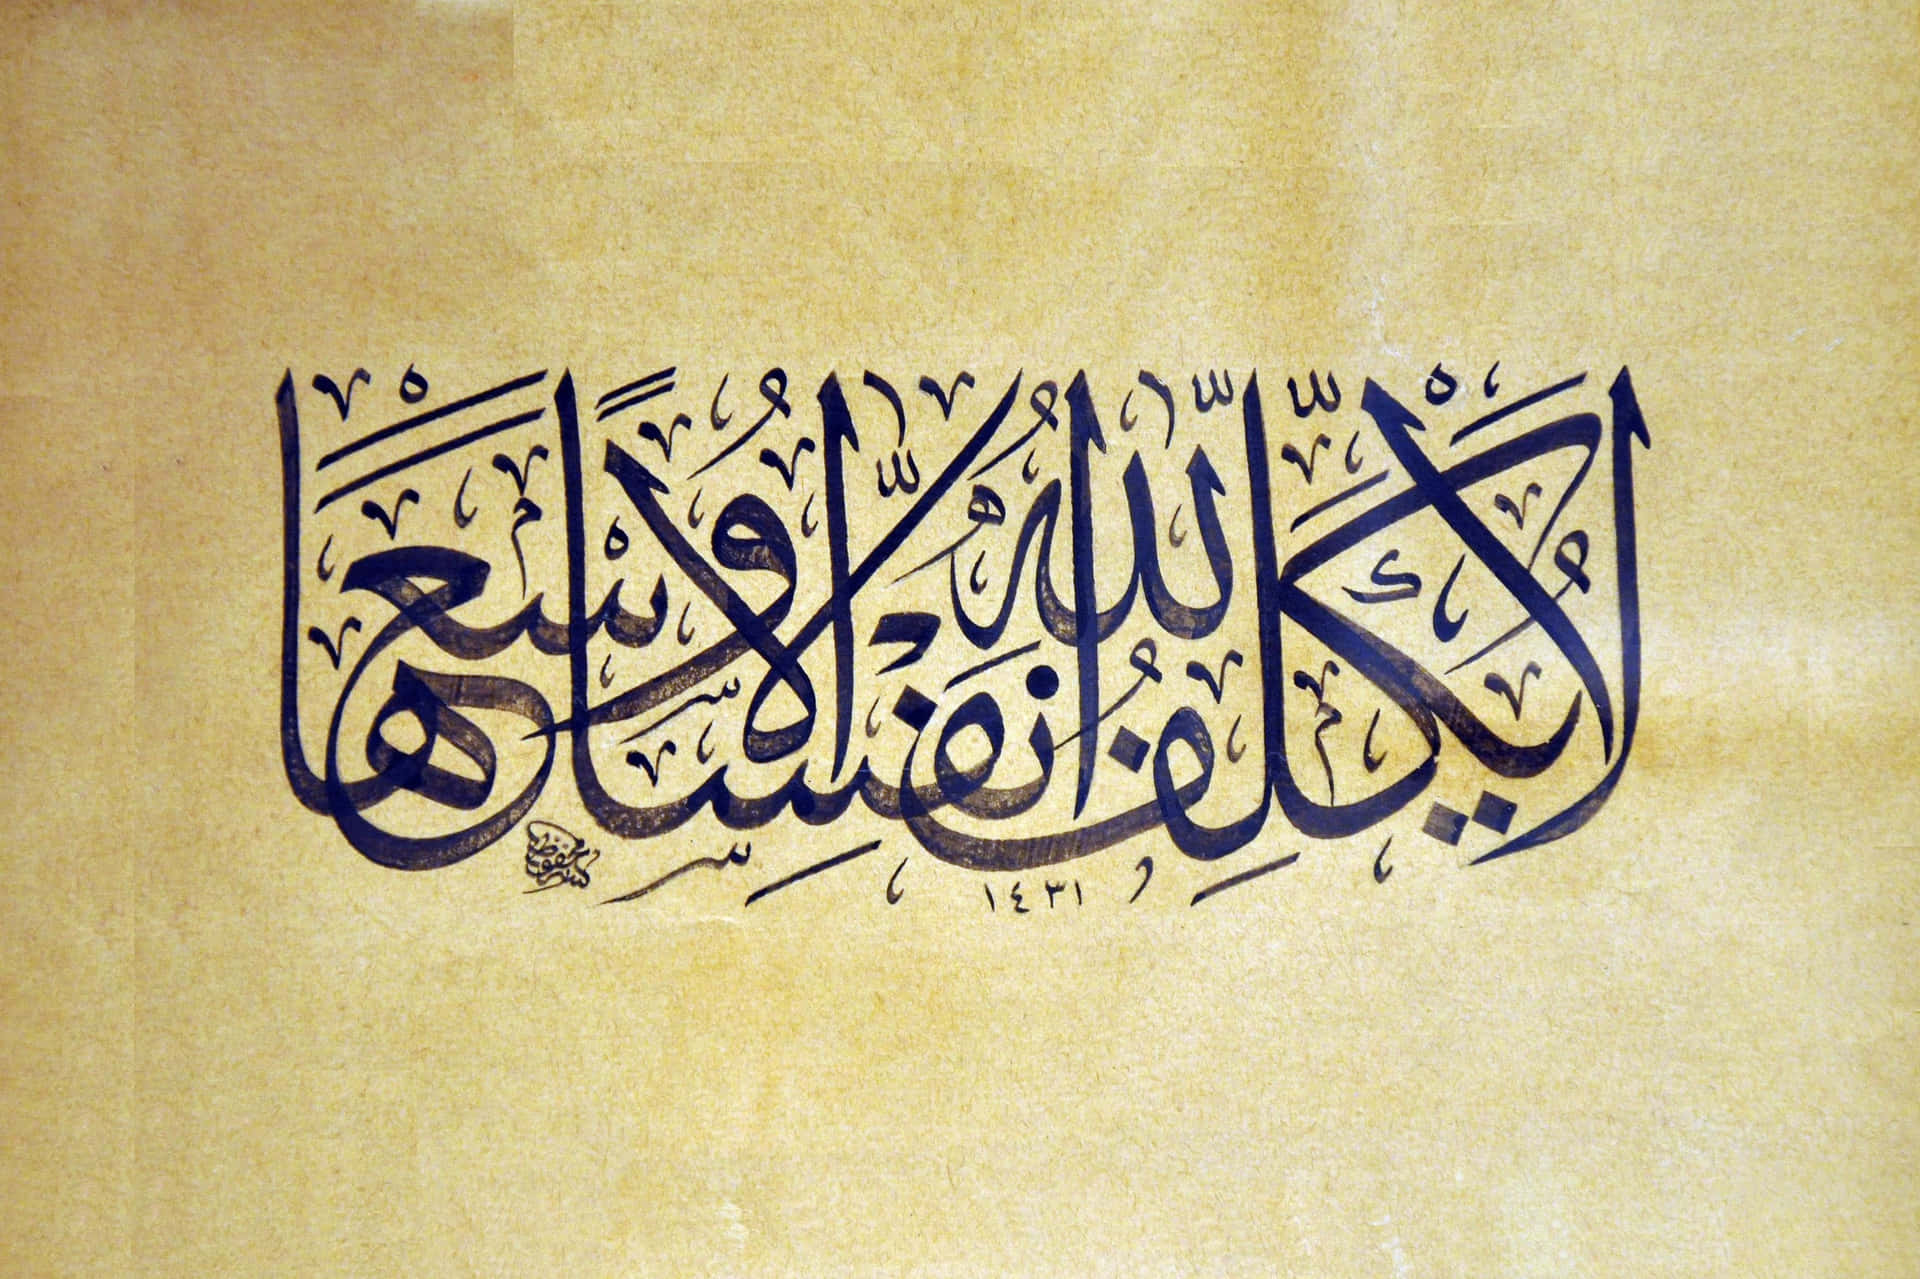 Ettinspirerande Citat På Arabisk Skrift.